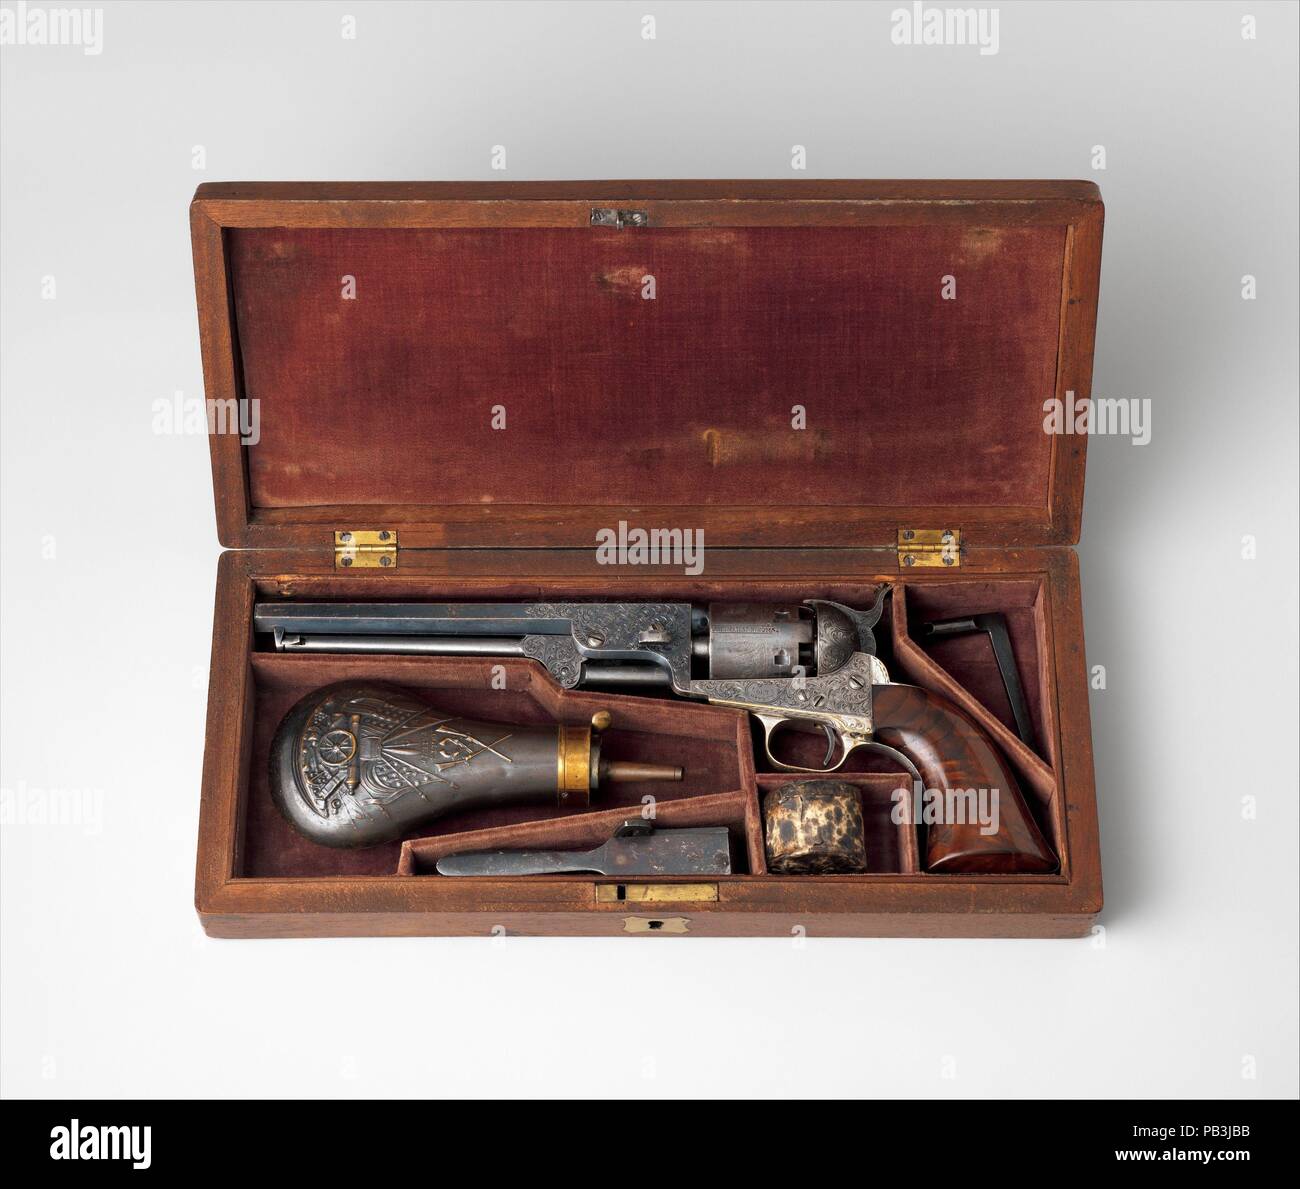 Modèle Colt 1851 Navy Revolver à percussion, le numéro de série 29705, avec étui et accessoires. Culture : American, Hartford, Connecticut. Dimensions : L. de pistolet à 13. (33 cm) ; L. de baril 7 1/2 in. (19 cm) ; Cal. 0,36 in. (9 mm) ; affaire : 14 1/4 x 6 3/8 x 2 1/4 in. (36,2 x 16,2 x 5,6 cm). Graveur : gravée par Gustave Young (American (Prusse), 1827-1895 né à Springfield, Massachusetts). Fabricant : Samuel Colt (American, Hartford, Connecticut 1814-1862). Date : ca. 1853-54. Gustave Young (1827-1895), un artisan, avec des armes à feu gravé et élaborer pour Colt dans Hartf ornement Banque D'Images